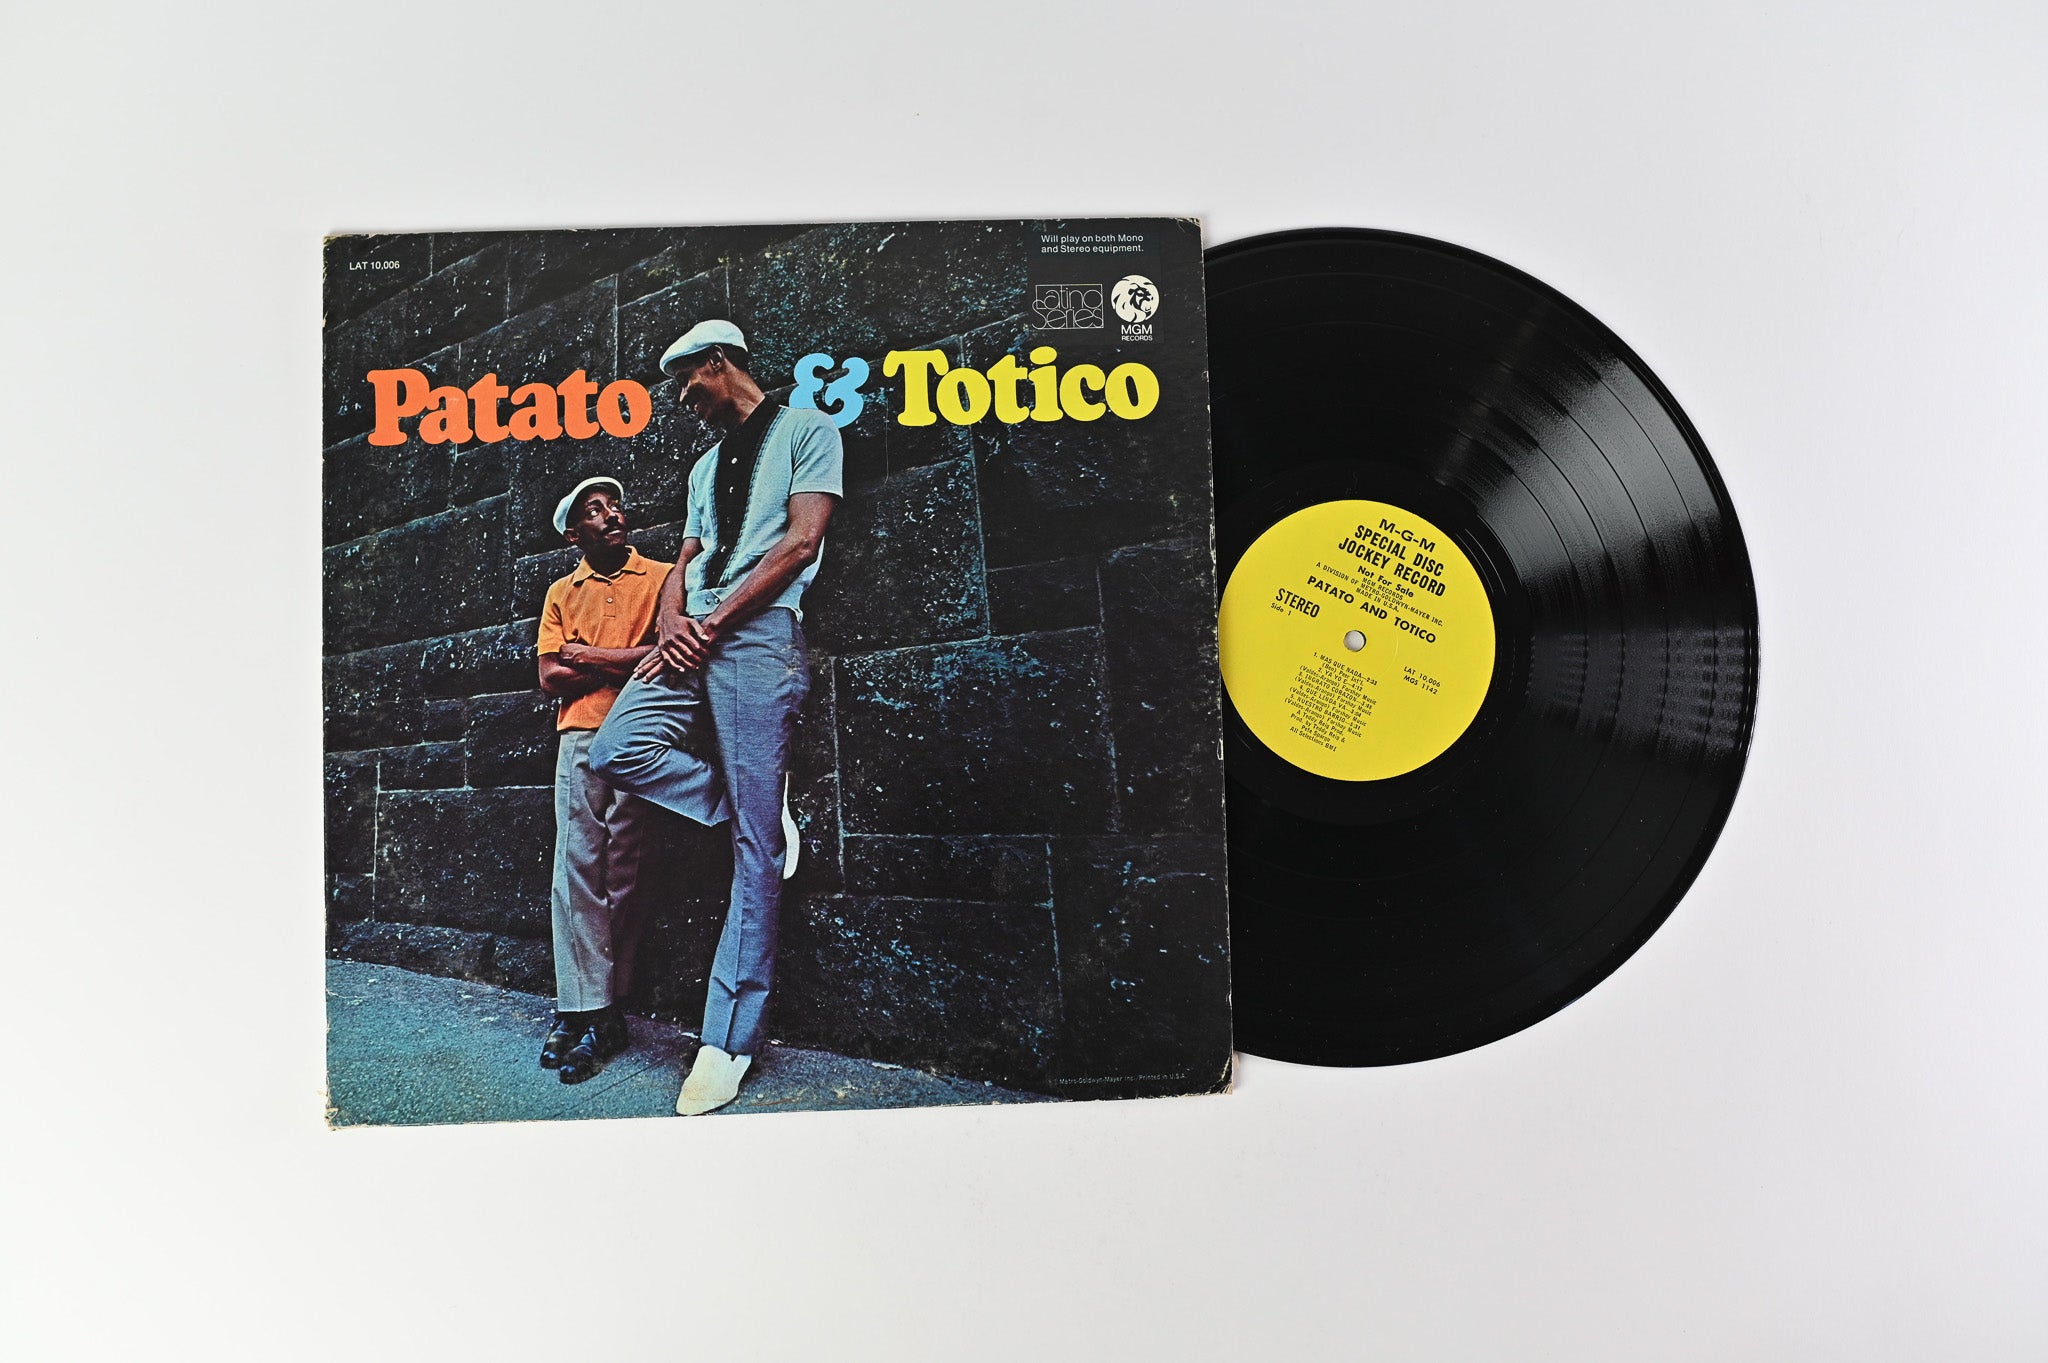 Patato & Totico - Patato & Totico on MGM Latino Series Stereo Promo Reissue